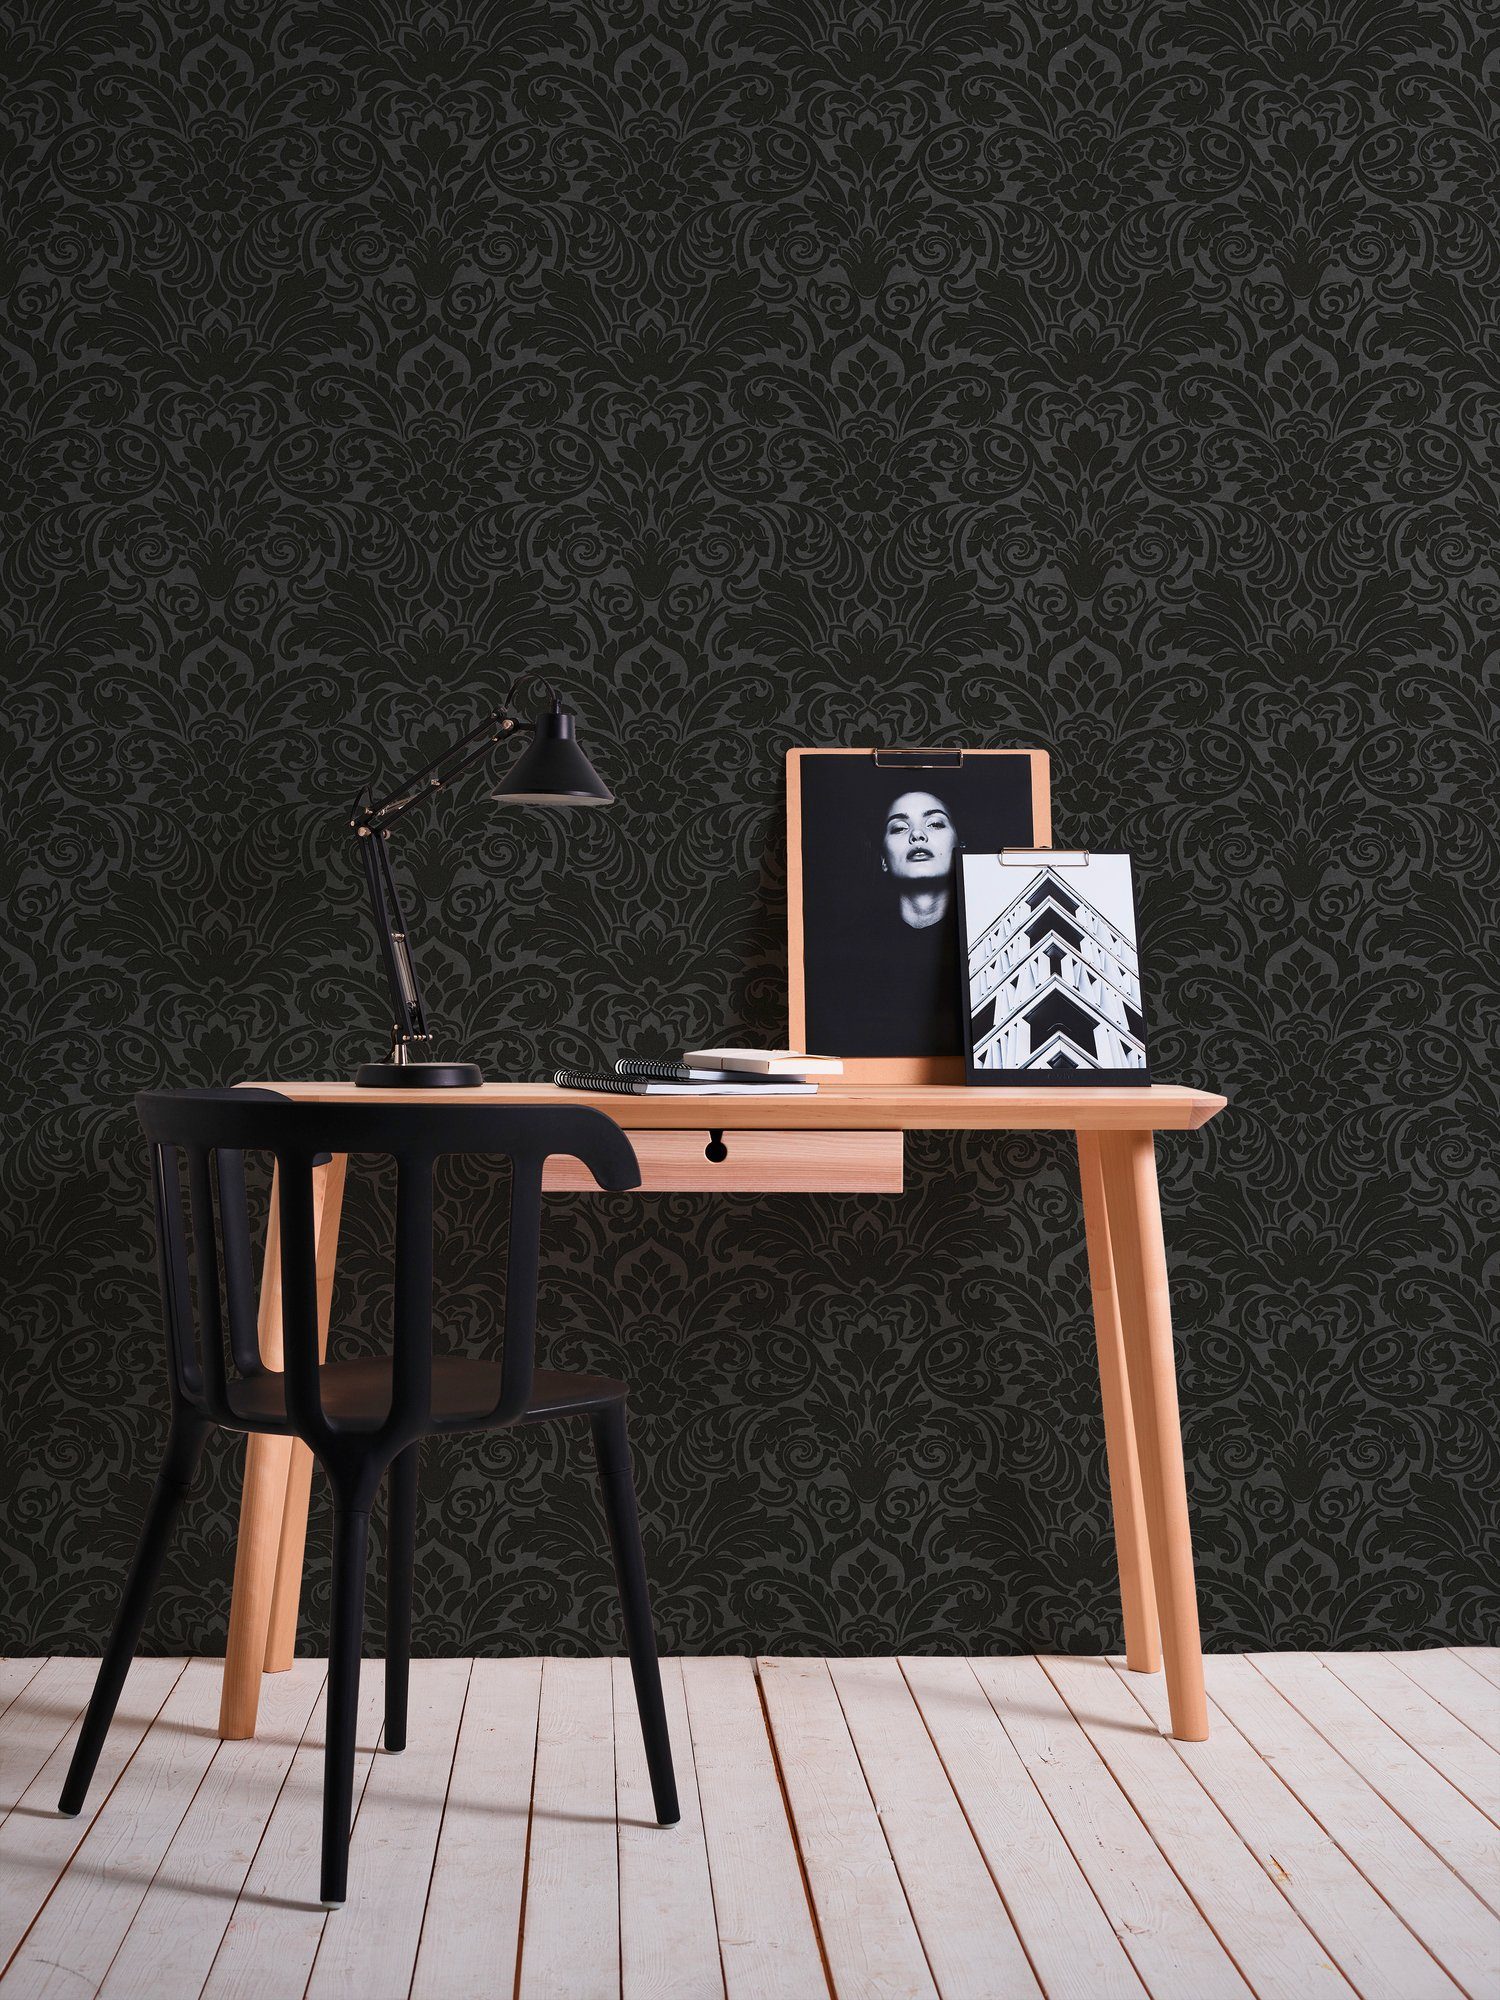 Architects Paper Vliestapete Luxury wallpaper, Barock Tapete silberfarben/schwarz Barock, strukturiert, Ornament